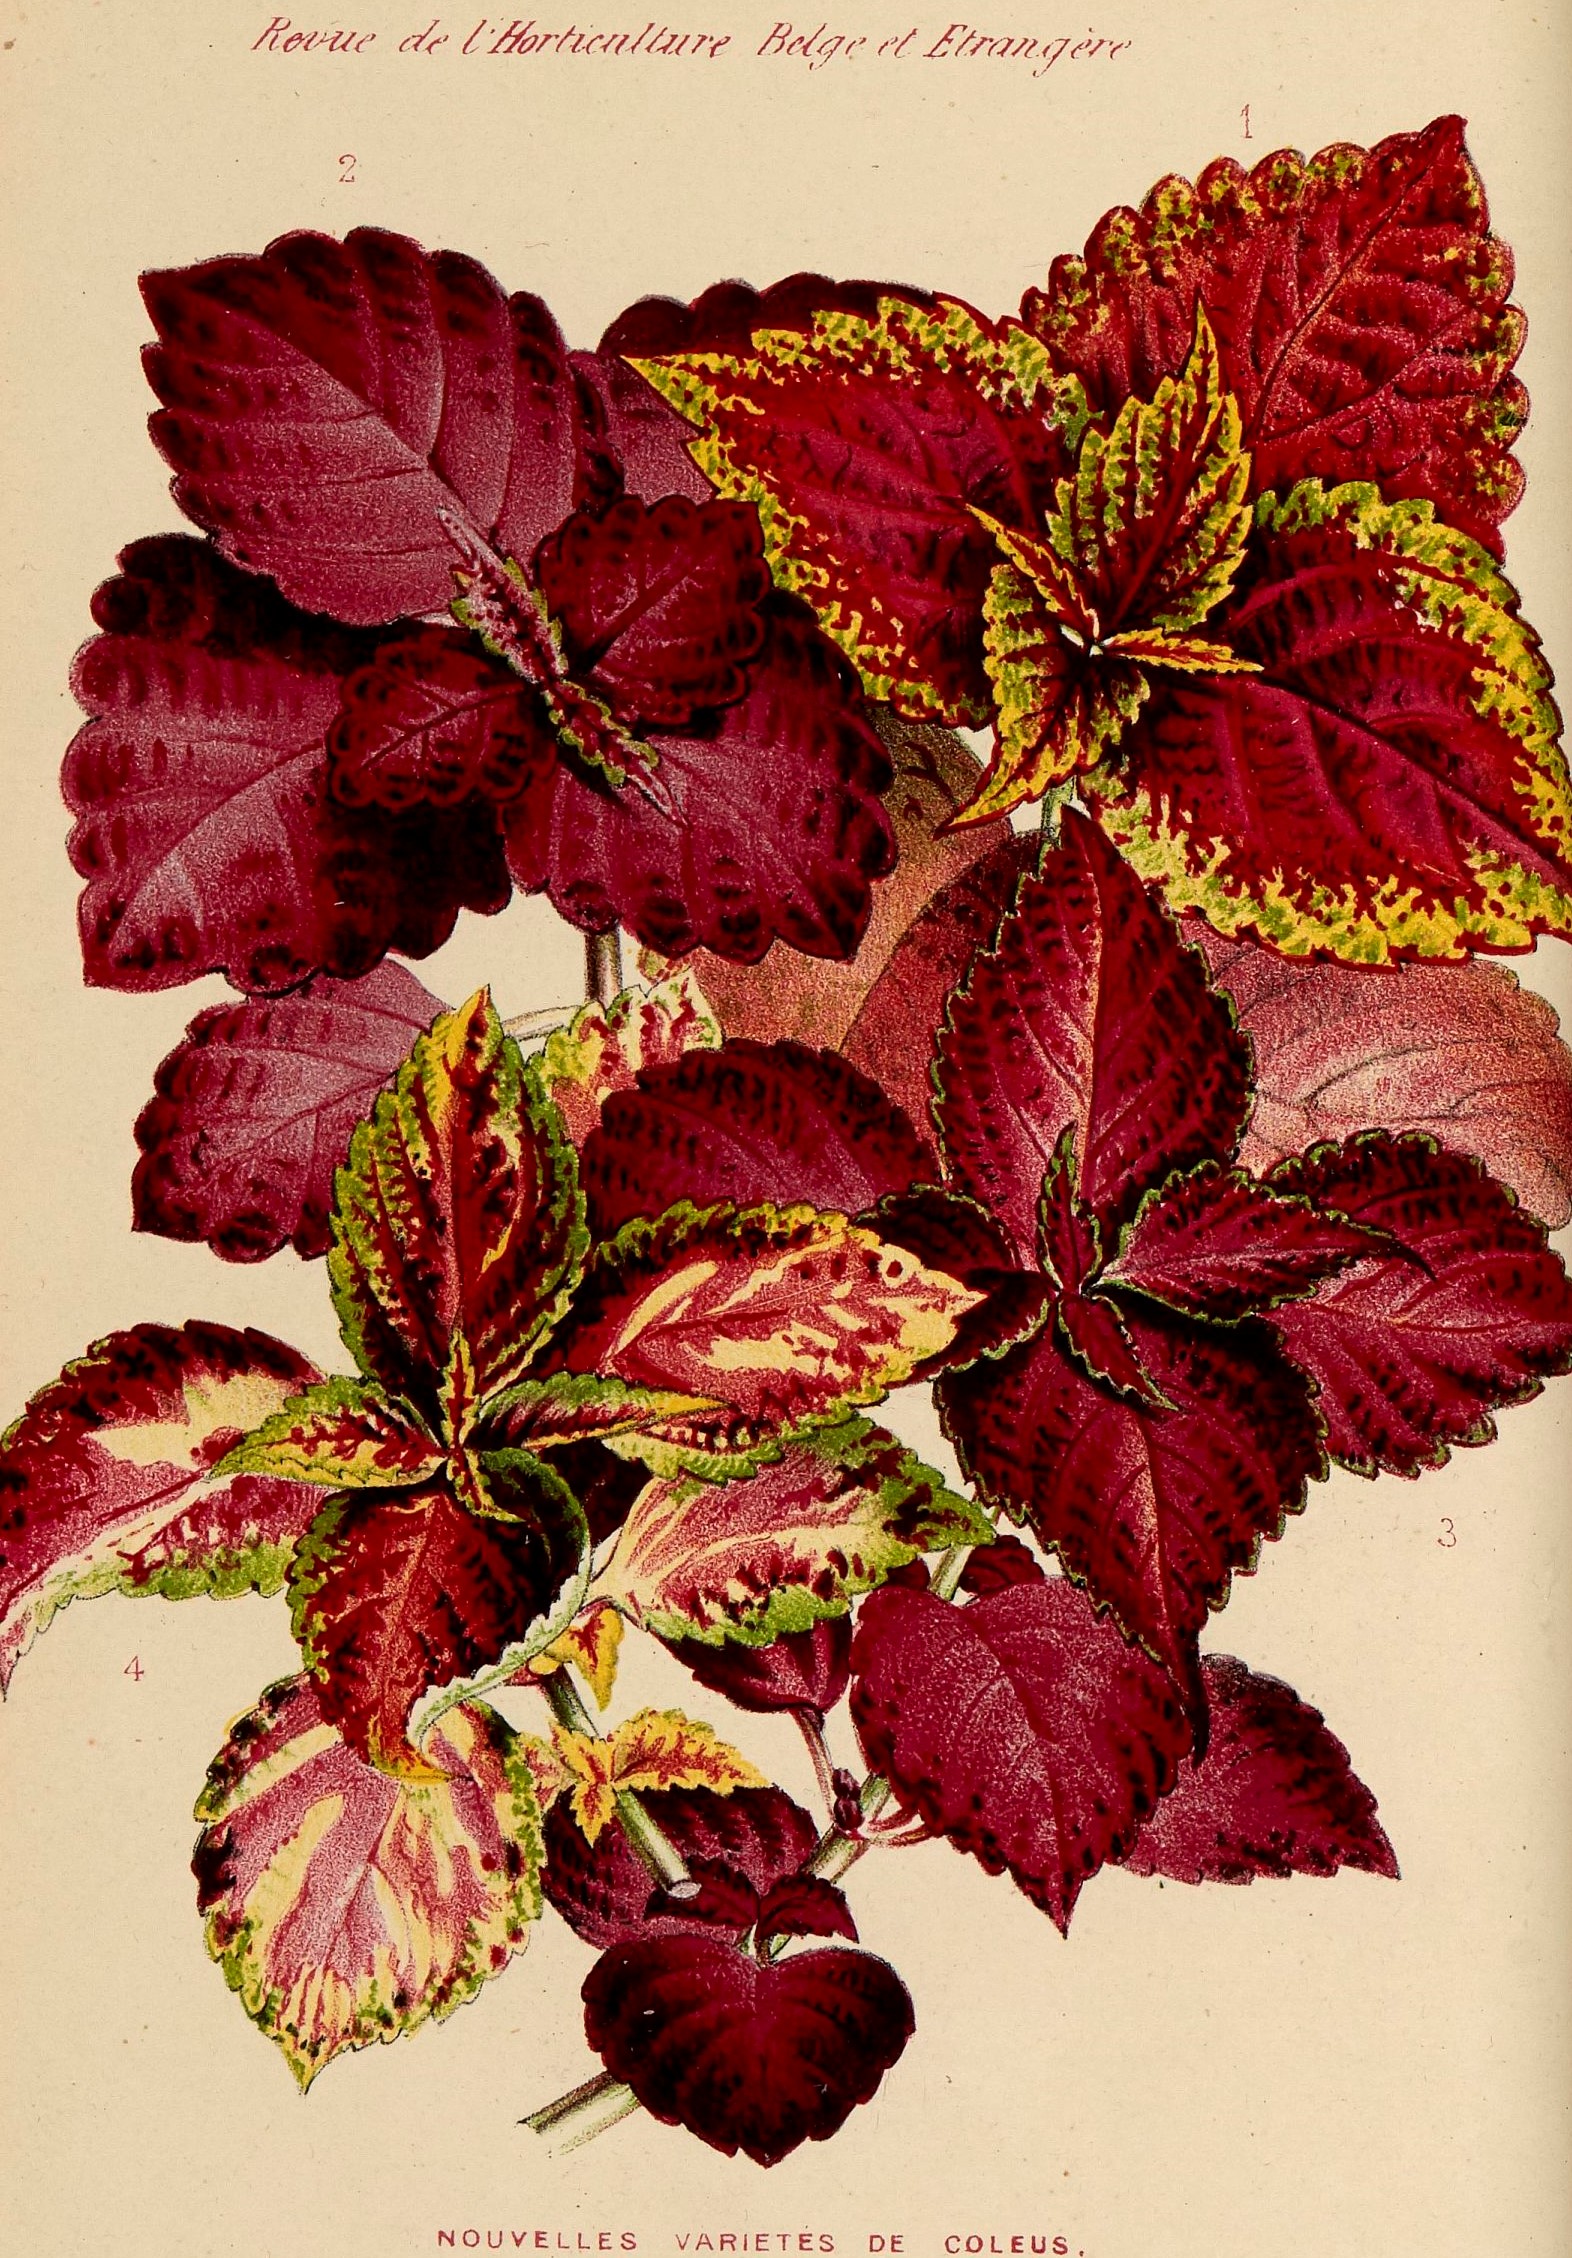 Gravure issue de la Revue d'horticulture belge et étrangère de 1880